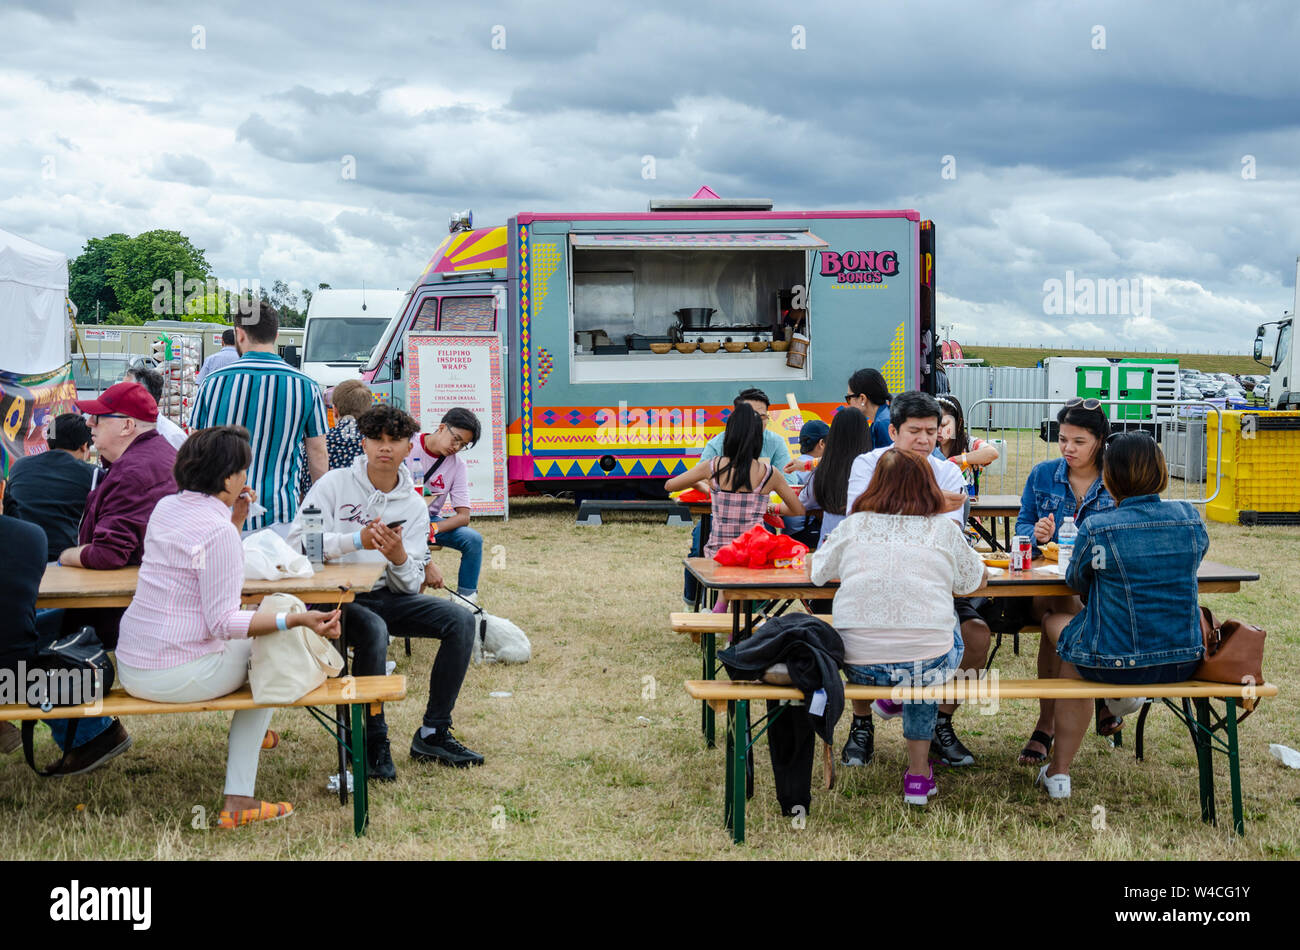 Eine mobile Gastronomie van verkauft Filipino Street Food. Die Leute sitzen an Holztischen im Barrio Fiesta auf London Essen Stockfoto